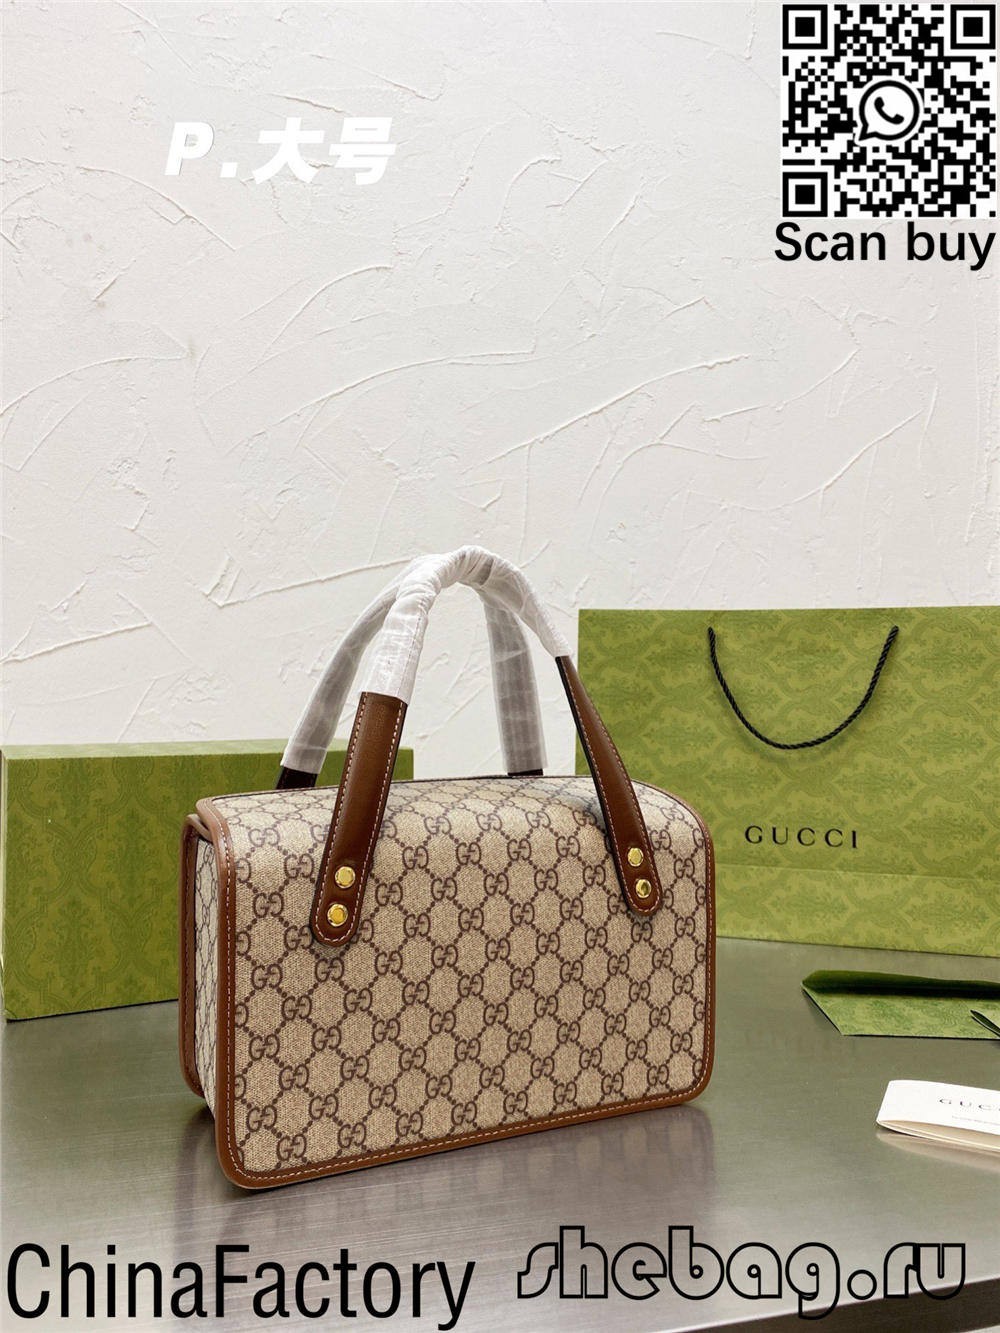 Високоякісна репліка сумки Gucci Horsebit hobo в Інтернеті (оновлено в 2022 році) - Інтернет-магазин підробленої сумки Louis Vuitton найкращої якості, копія дизайнерської сумки ru